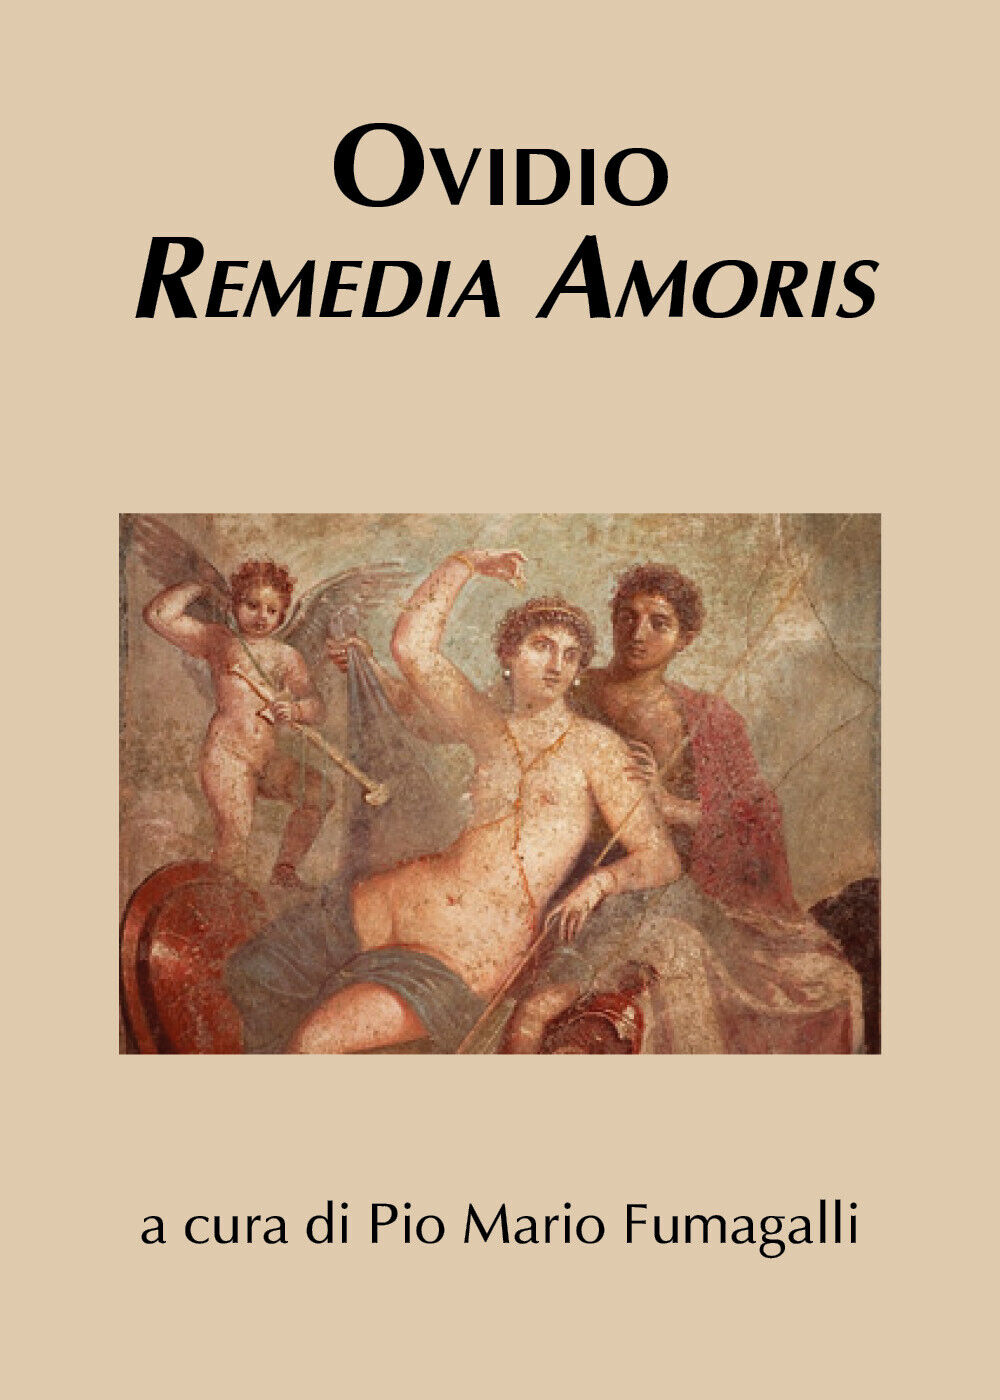 Ovidio. Remedia amoris (Ovidio, Fumagalli, 2018)